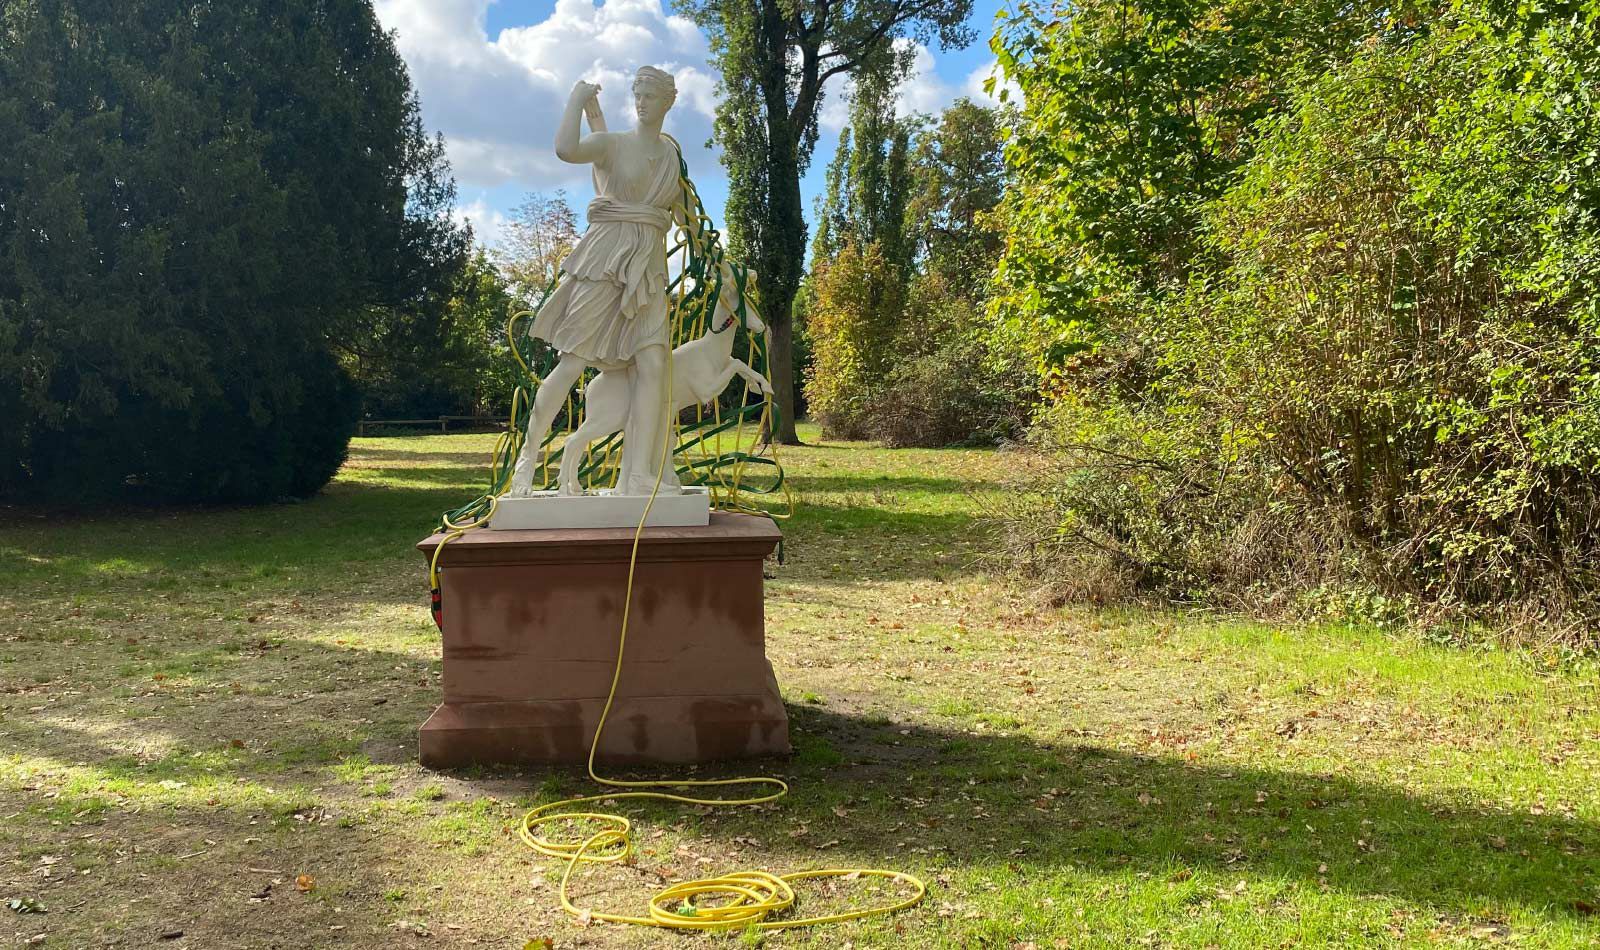 Kunst-Installation von Josephine Riemann: ein aus Gartenschlauch gewebtes Netz, welches einer Plastik der Göttin Diana (im Schlosspark Rumpenheim, Offenbach bei Frankfurt am Main) umgelegt wurde.